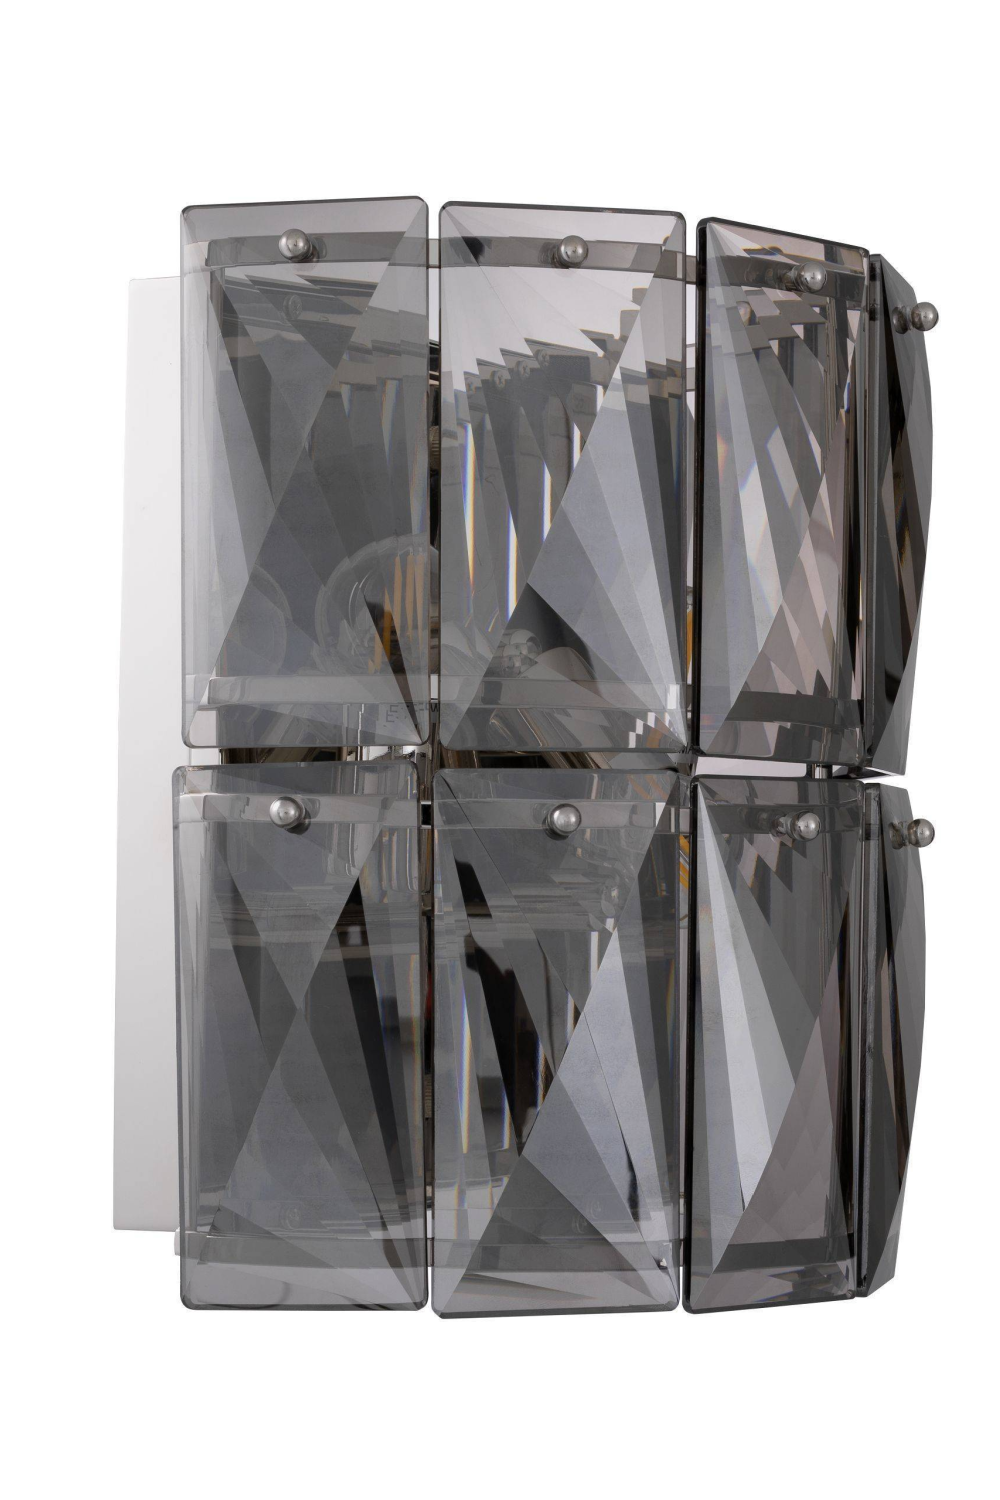 Nickel Crystal Glass Wall Lamp | Eichholtz Amazone  | Oroa.com